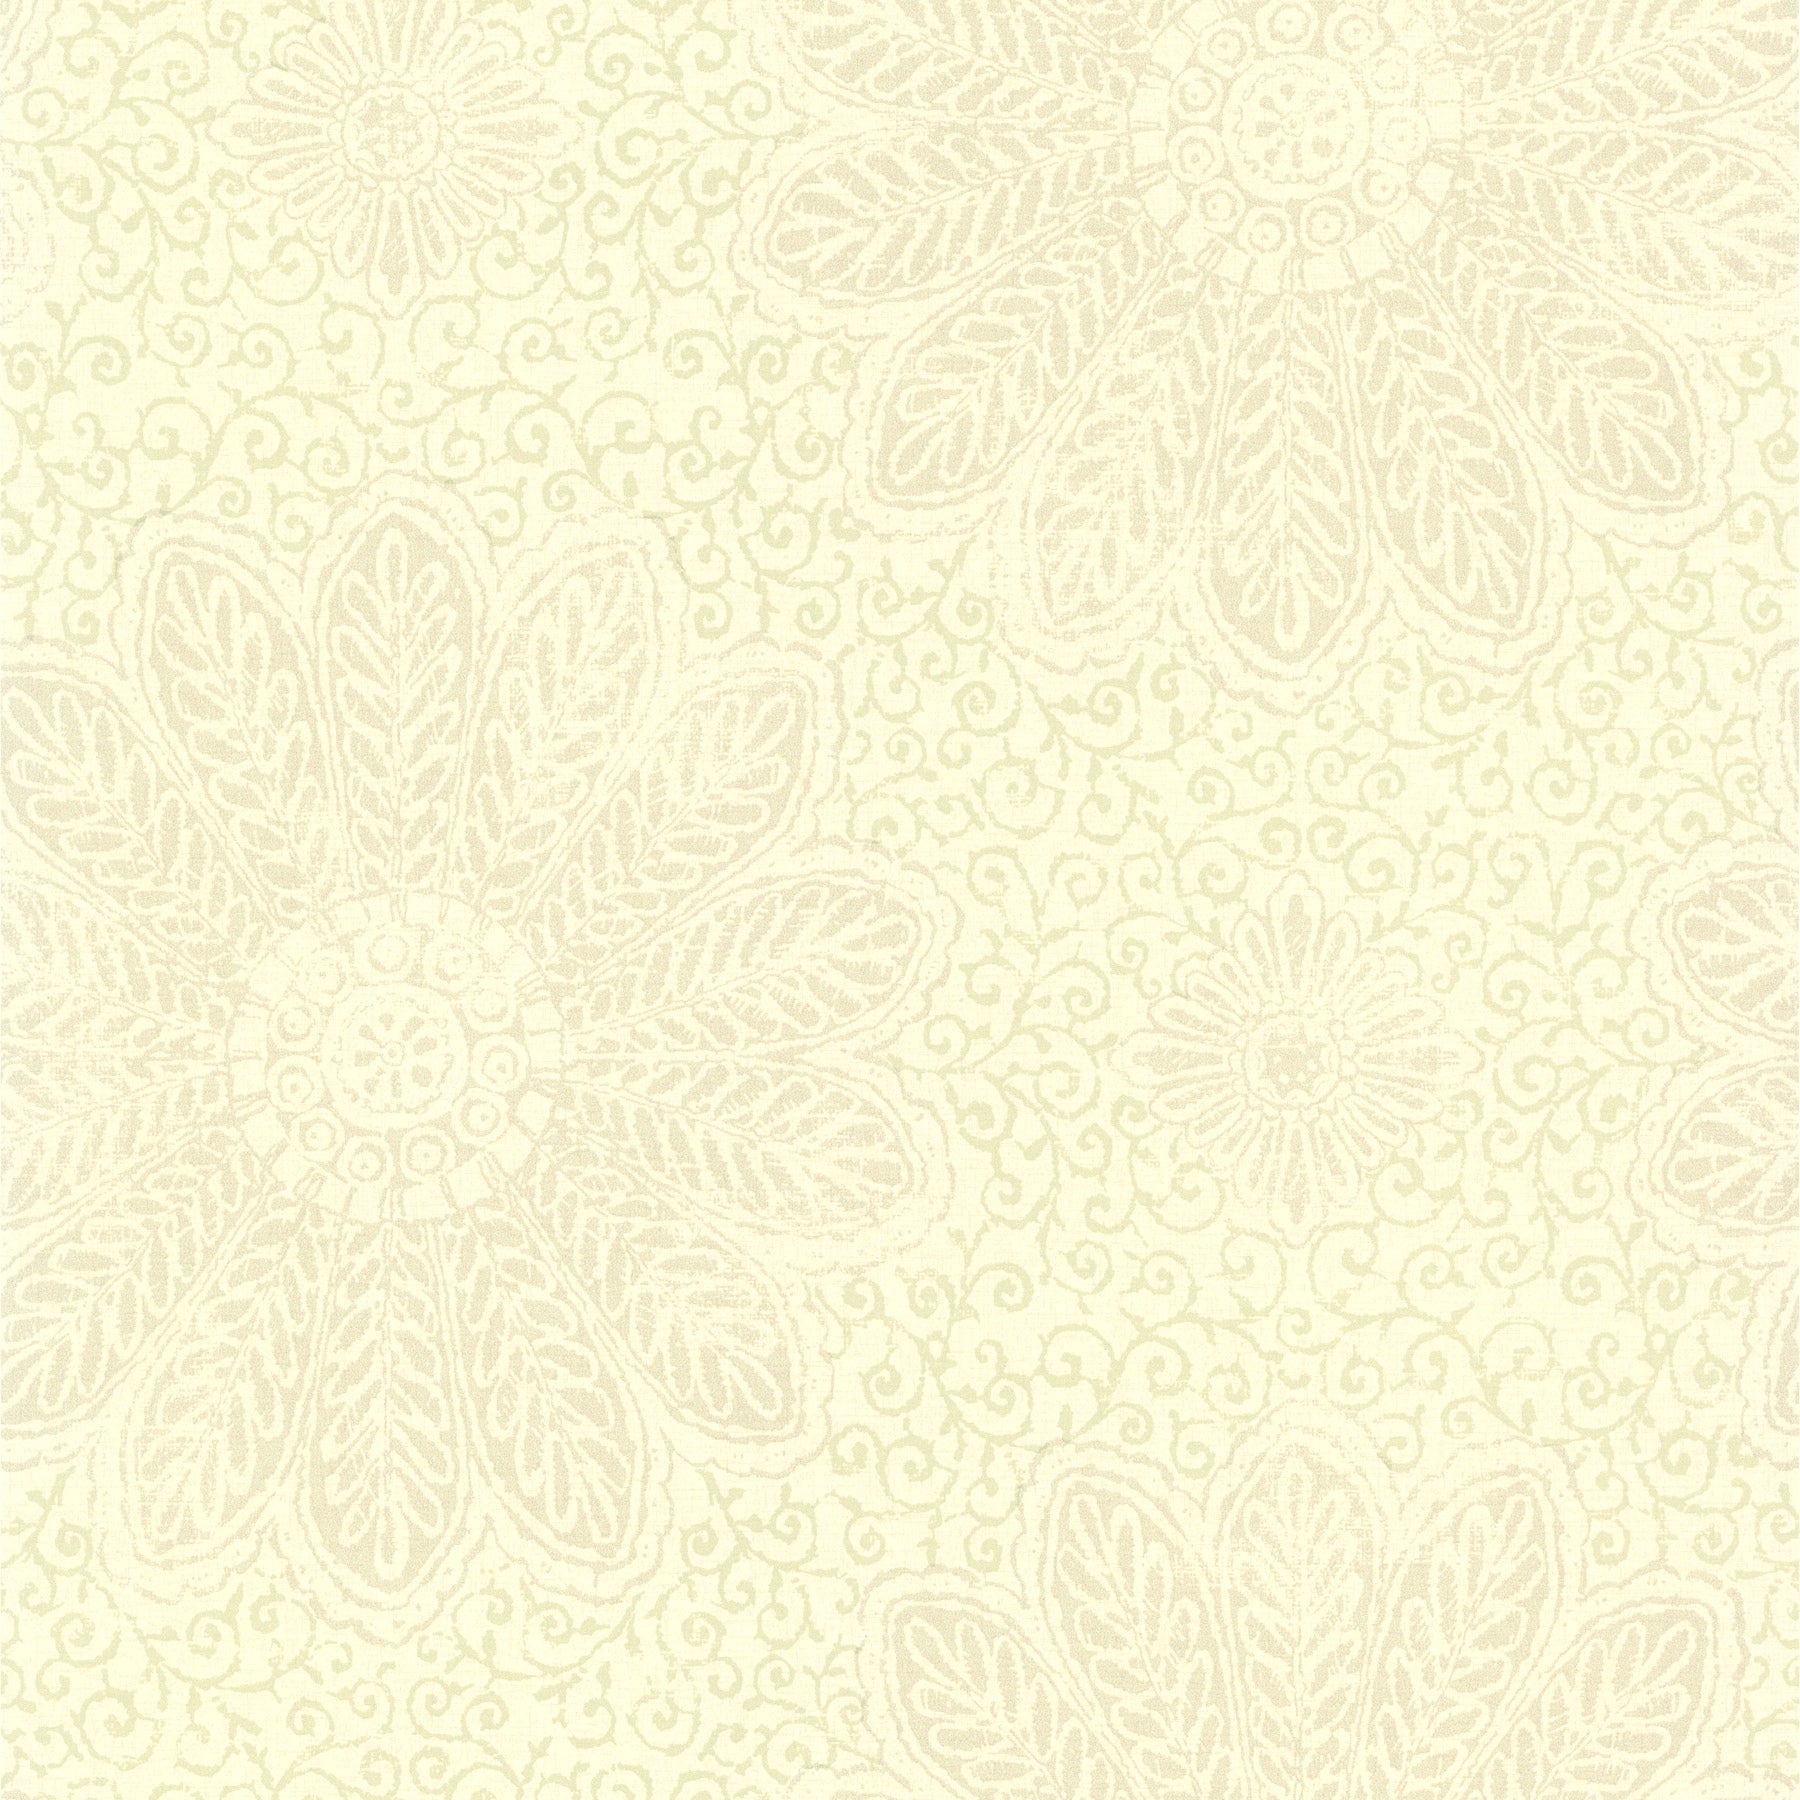 Purchase 2766-66951 KItchen & Bath Essentials Oxalis Neutral Floral Scroll Brewster Wallpaper